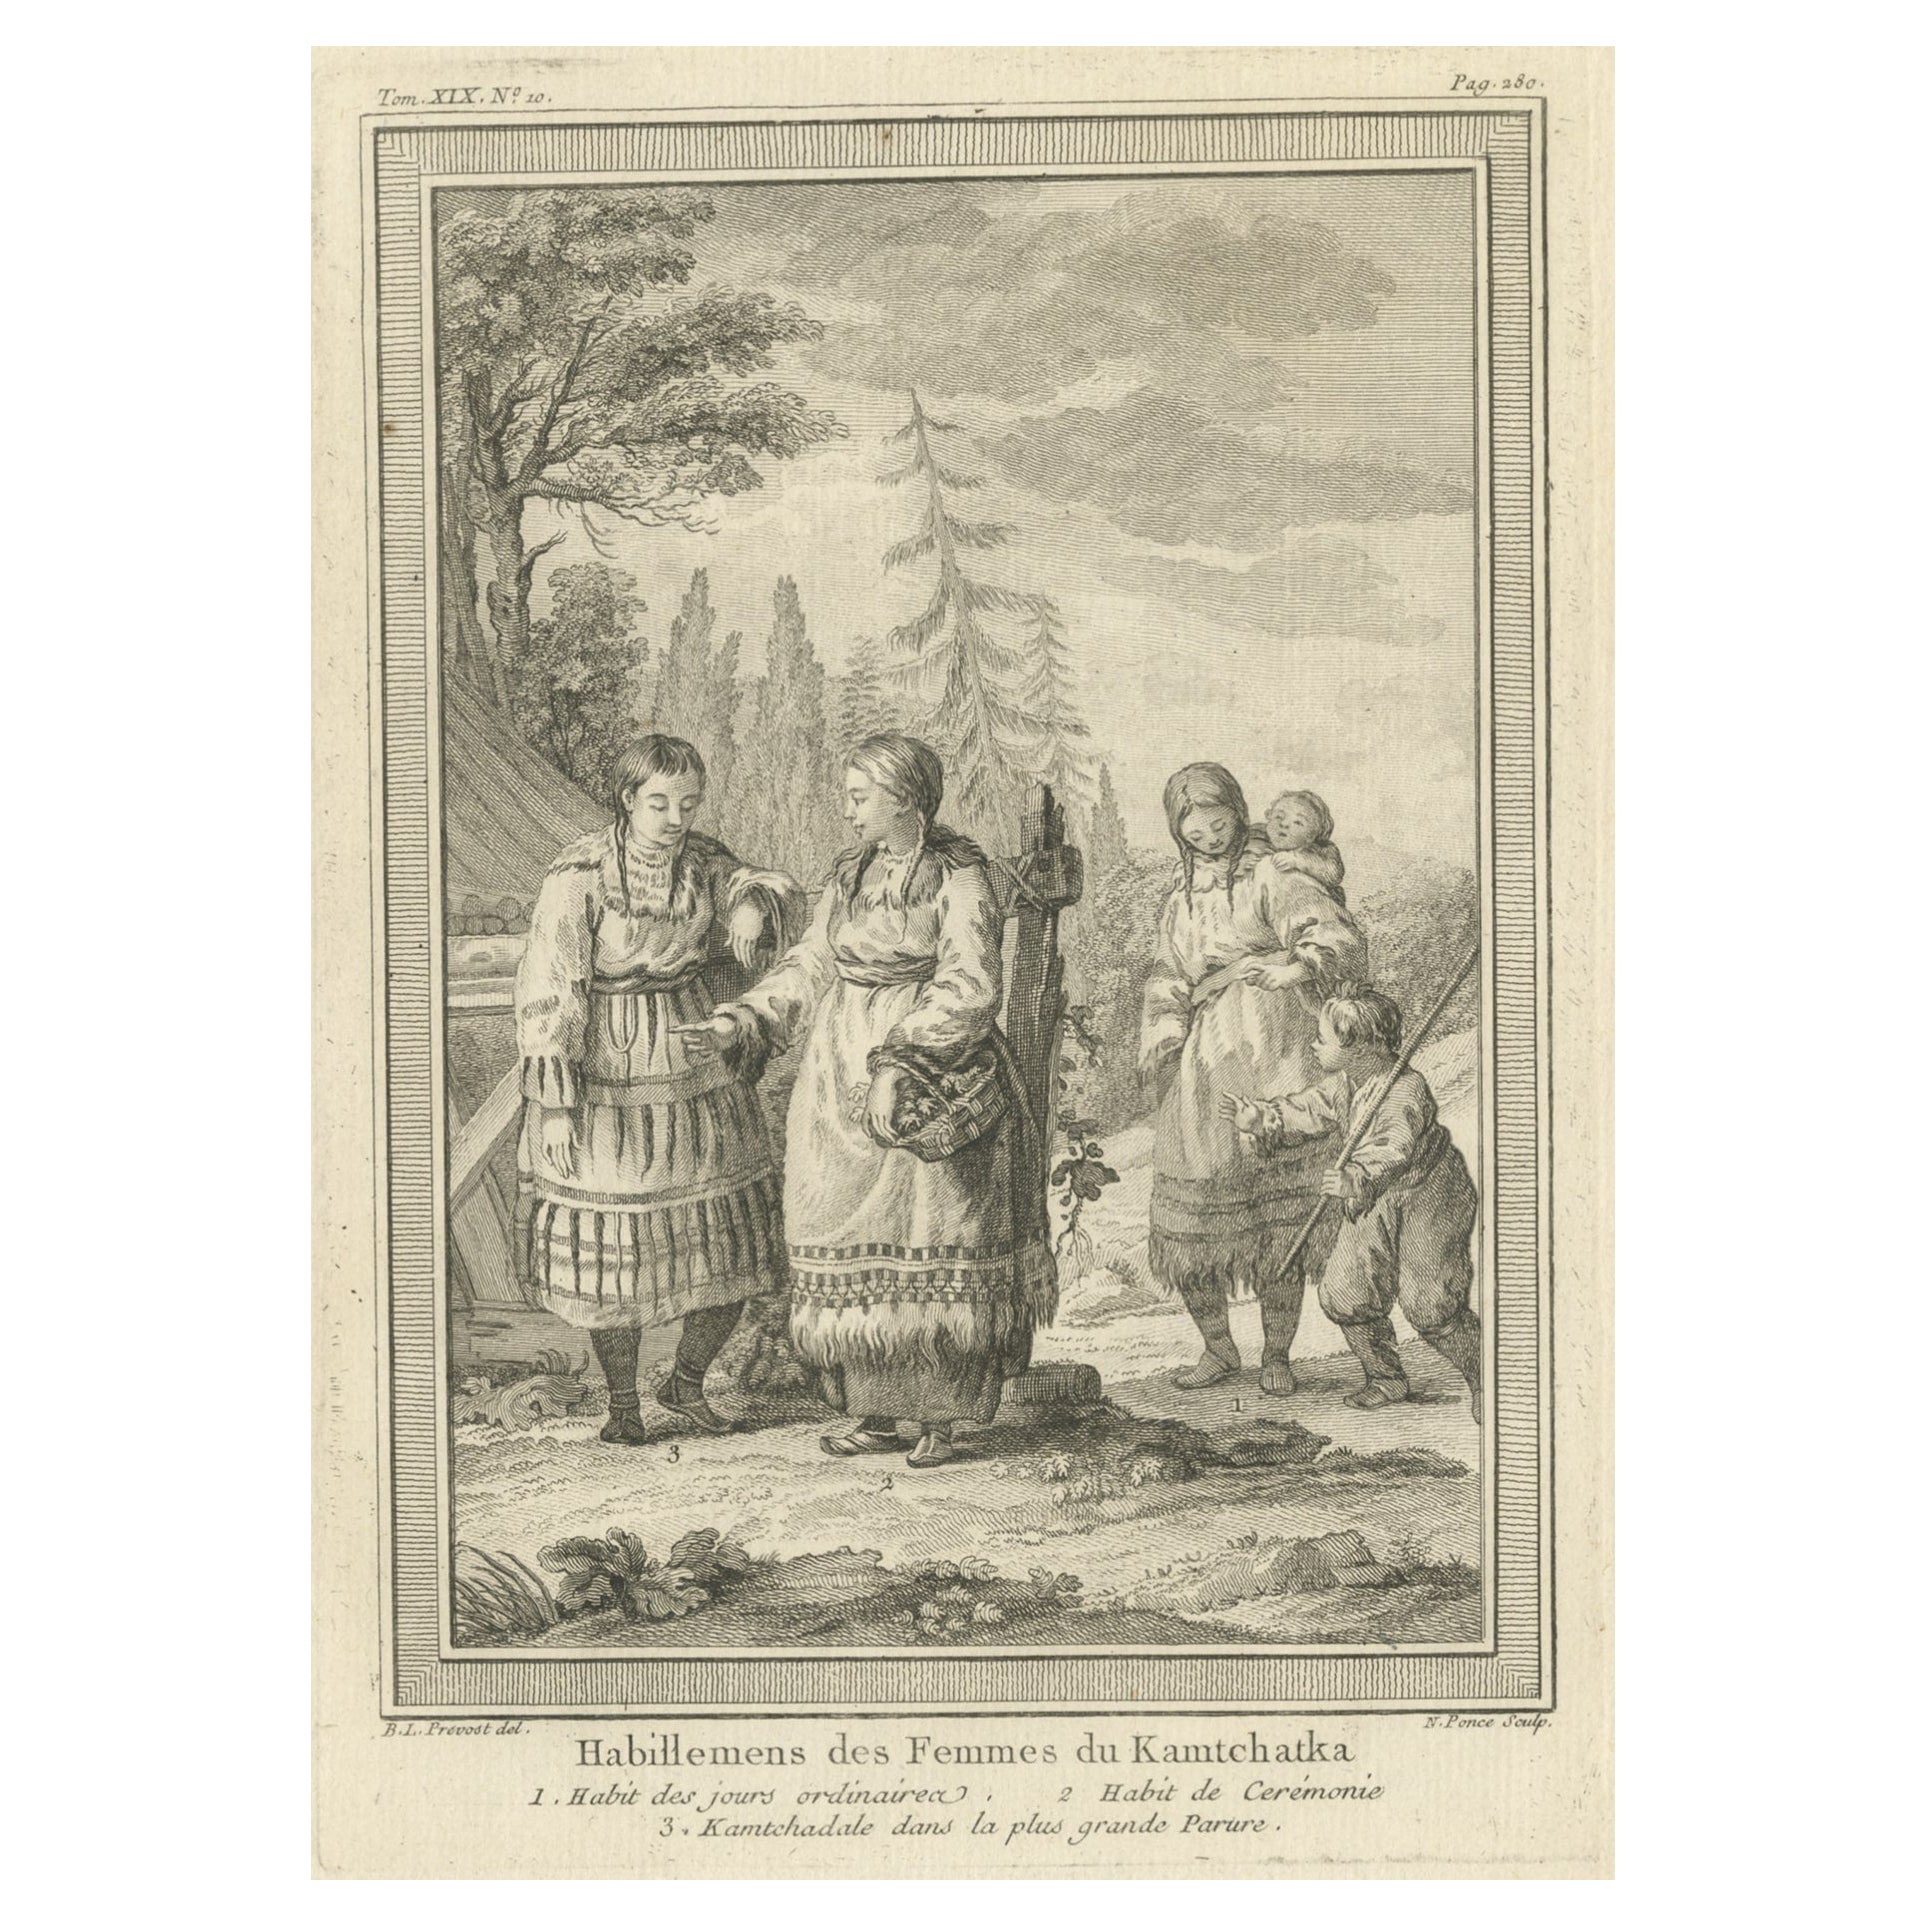 Gravure en cuivre de femmes cambodgiennes de Kamchatka, Russie, 1770